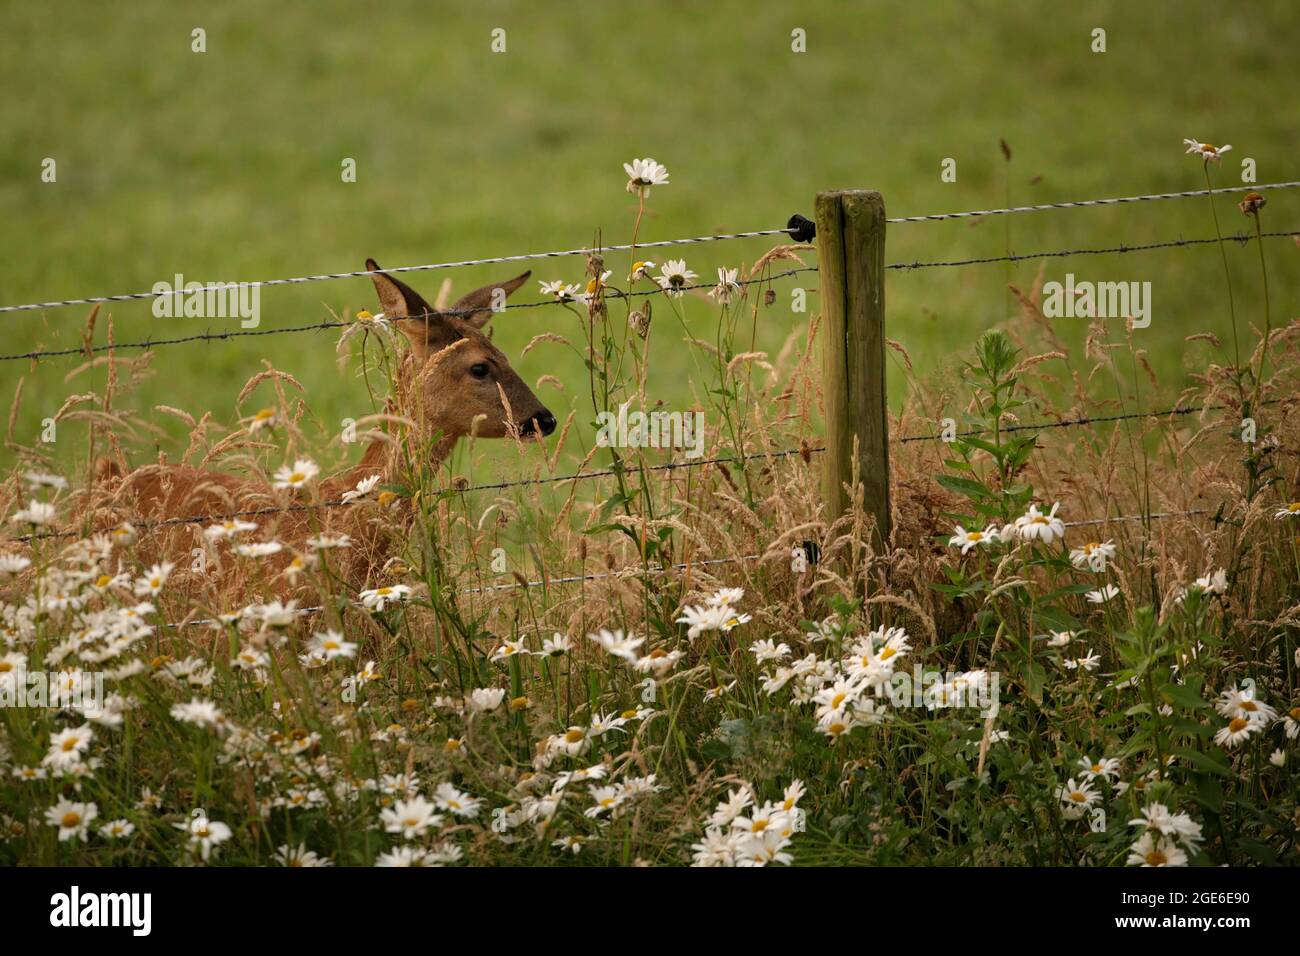 Niederlande, Õs-Graveland, Landgut Hilverbeek. Rehe, Weibchen, Eintritt in den Garten. Stockfoto